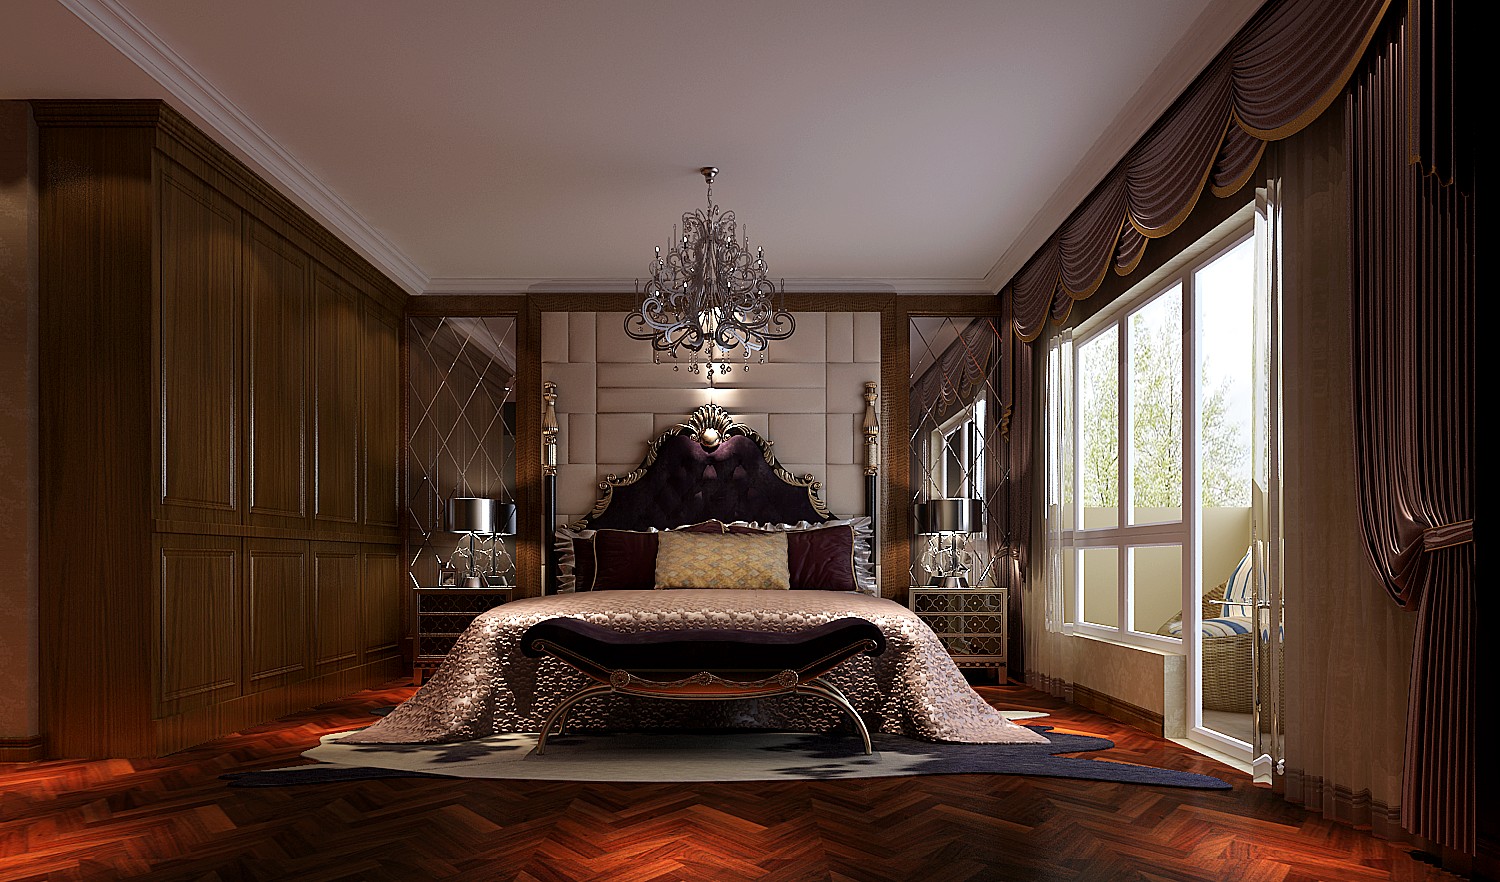 托斯卡纳 高度国际 鲁能七号院 卧室图片来自凌军在鲁能七号院  拥抱阳关的分享